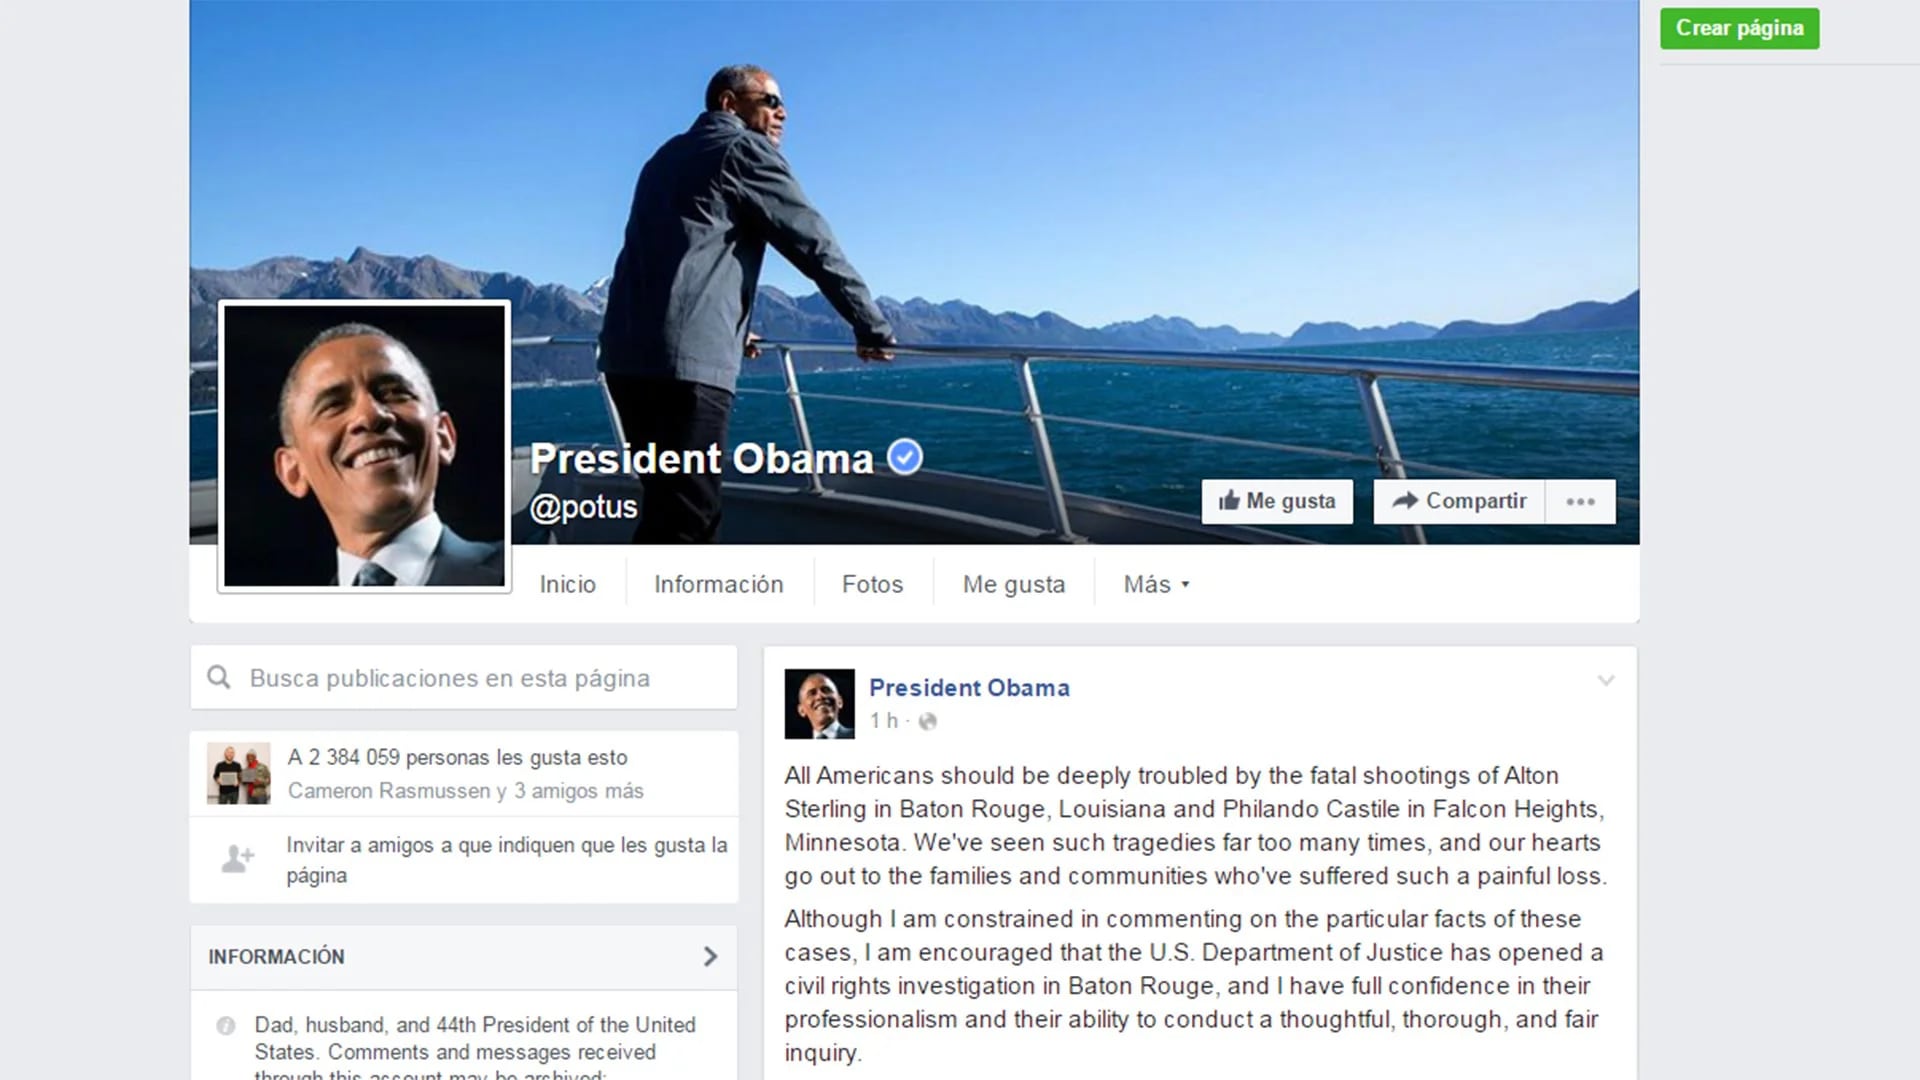 Obama escribió un mensaje en su cuenta de Facebook, donde expresó su “furia” por lo sucedido